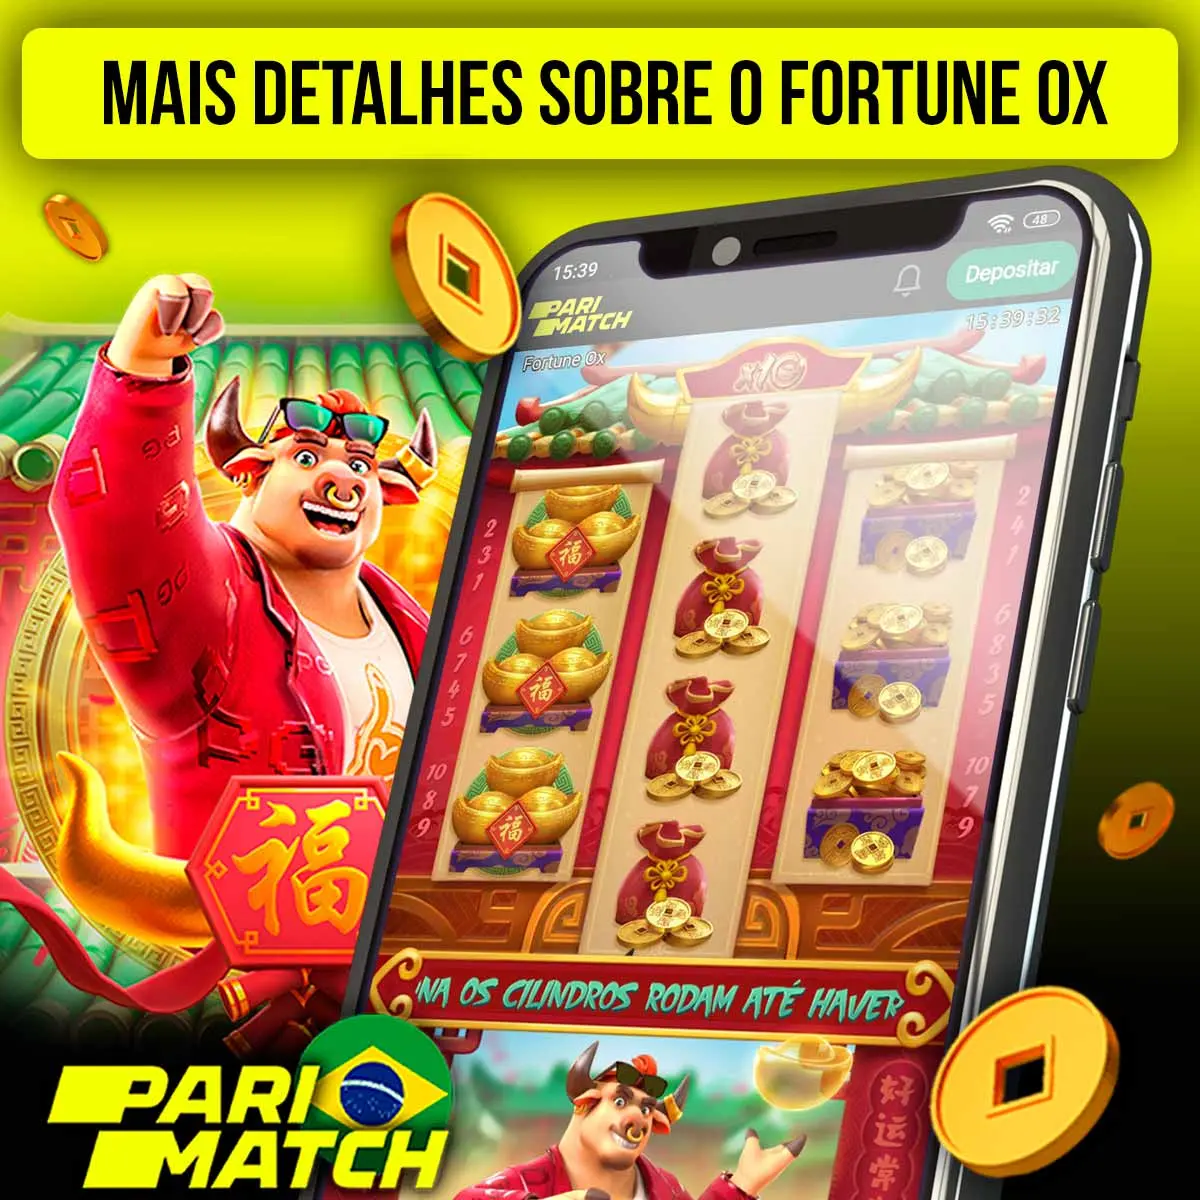 Mais informações sobre o Parimatch Fortune OX